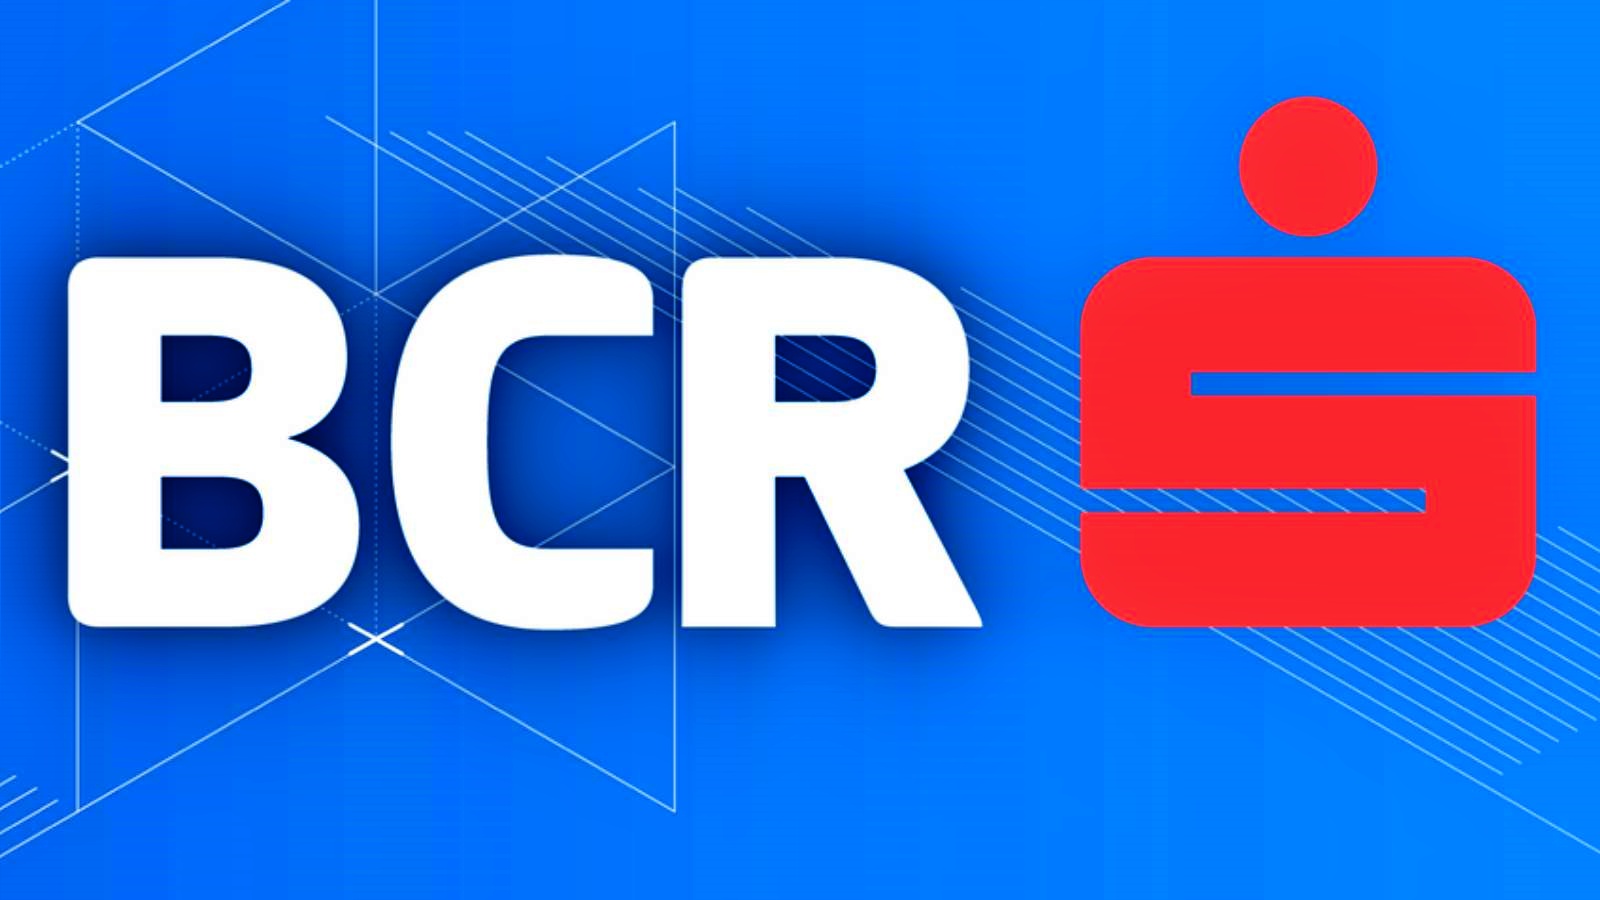 BCR Rumania Reciba GRATIS Clientes Rumanos de los que Puede Beneficiarse